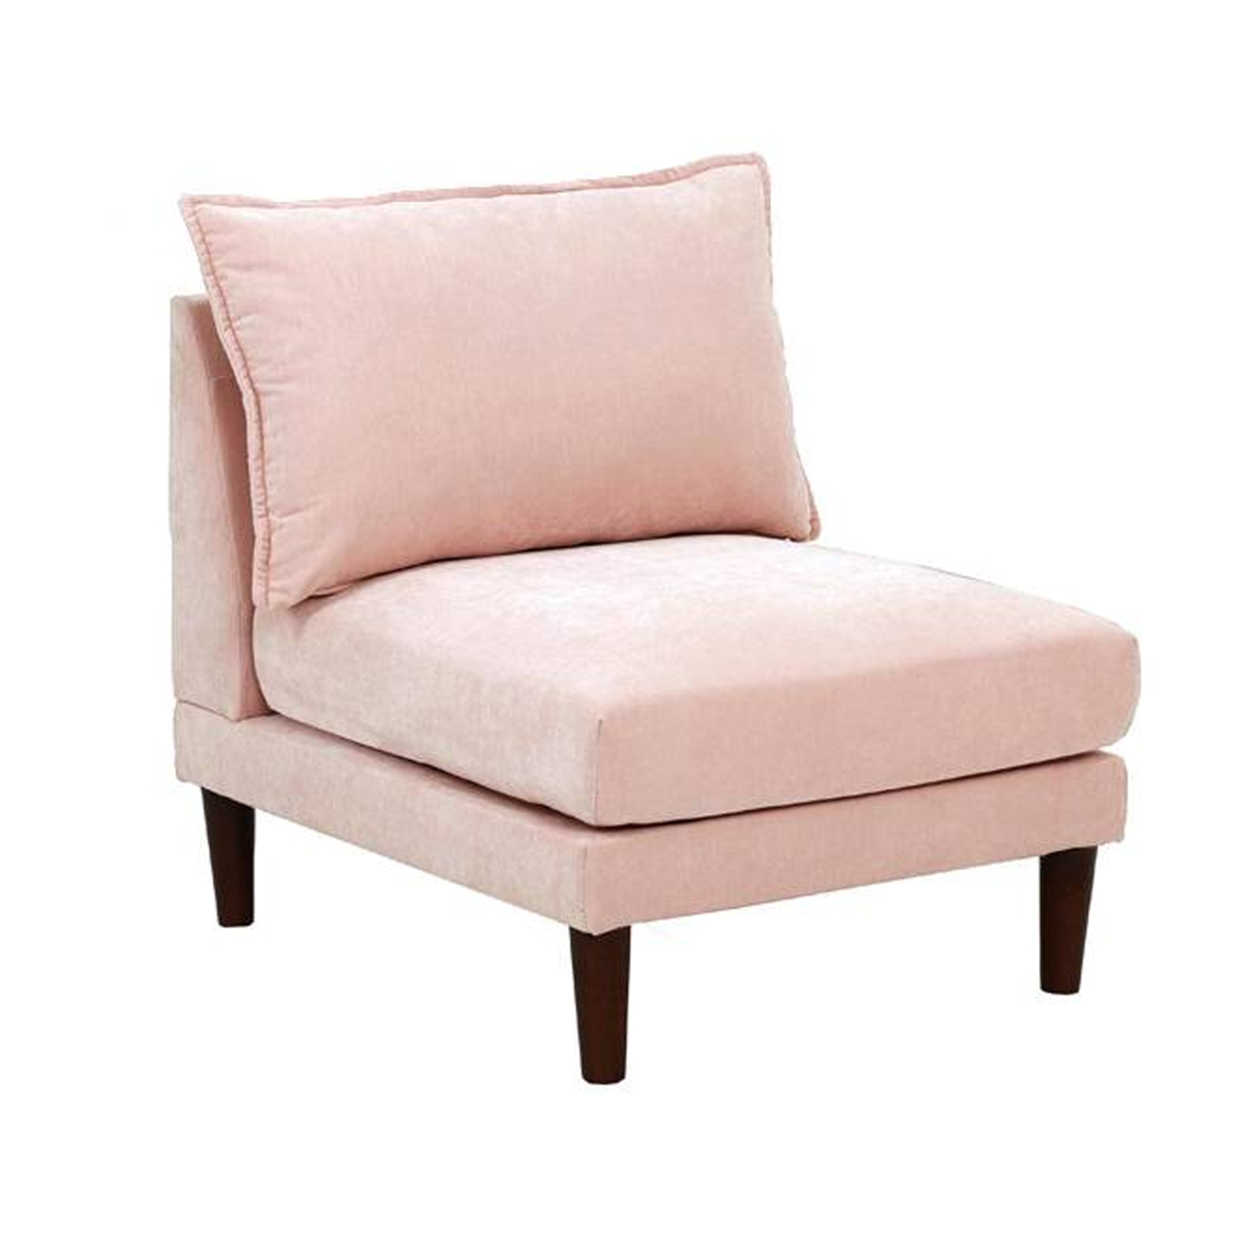 Rio 33 Inch Modular Armless Sofa Chair, Lumbar Cushion, Blush Pink- Saltoro Sherpi